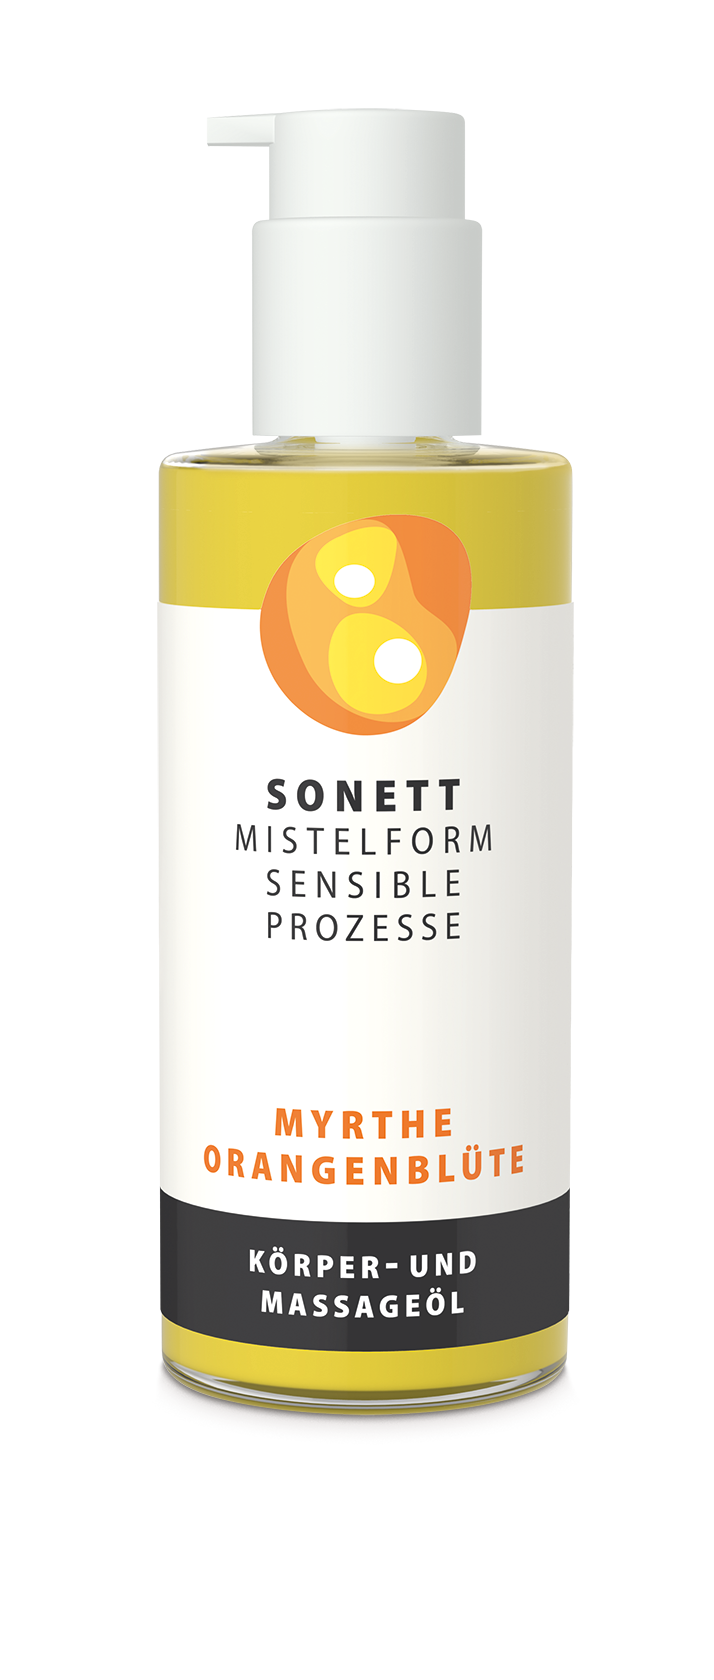 Mistelform "Sensible Prozesse" Myrthe Orangenblüte